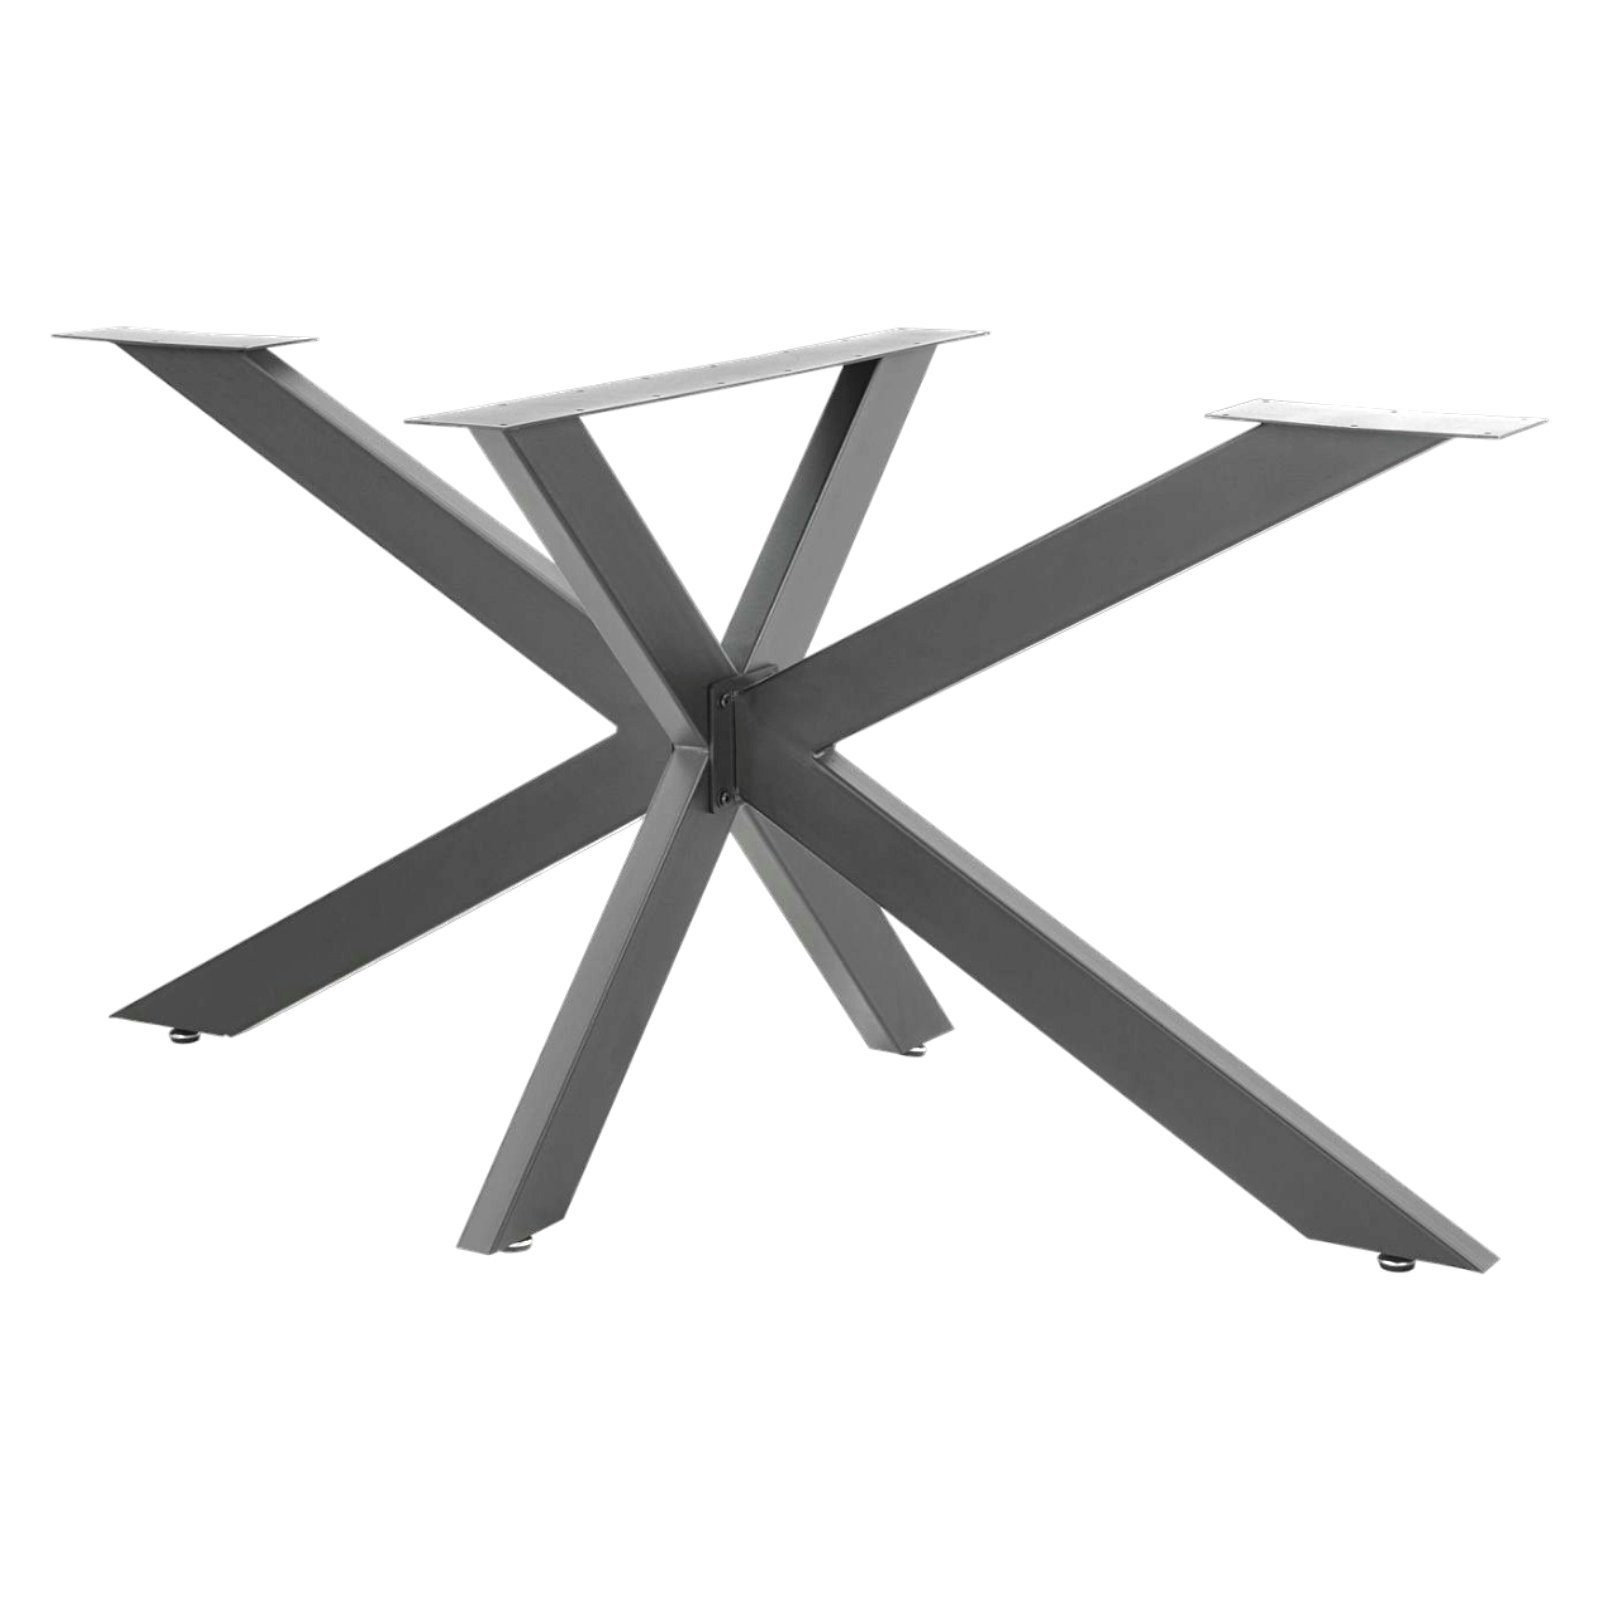 STADO Tischbein Tischgestell, Anthrazit, 150x78x71 Stahl cm, X-Design, Schwarz